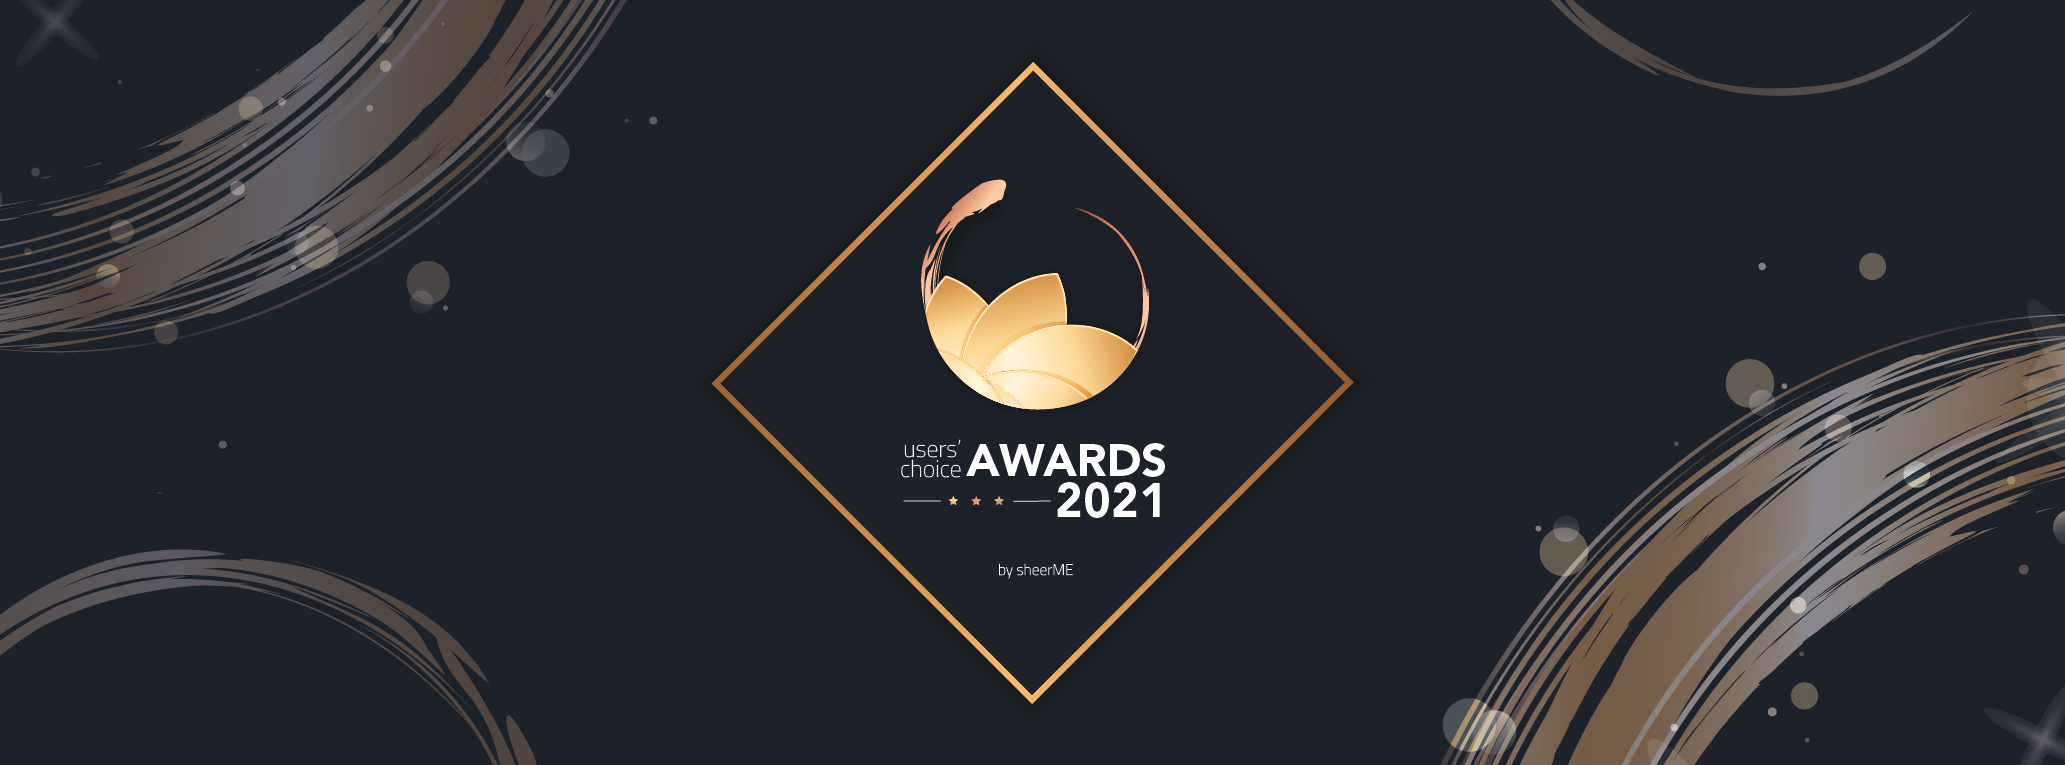 sheerME Users’ Choice Awards 2021 🎉